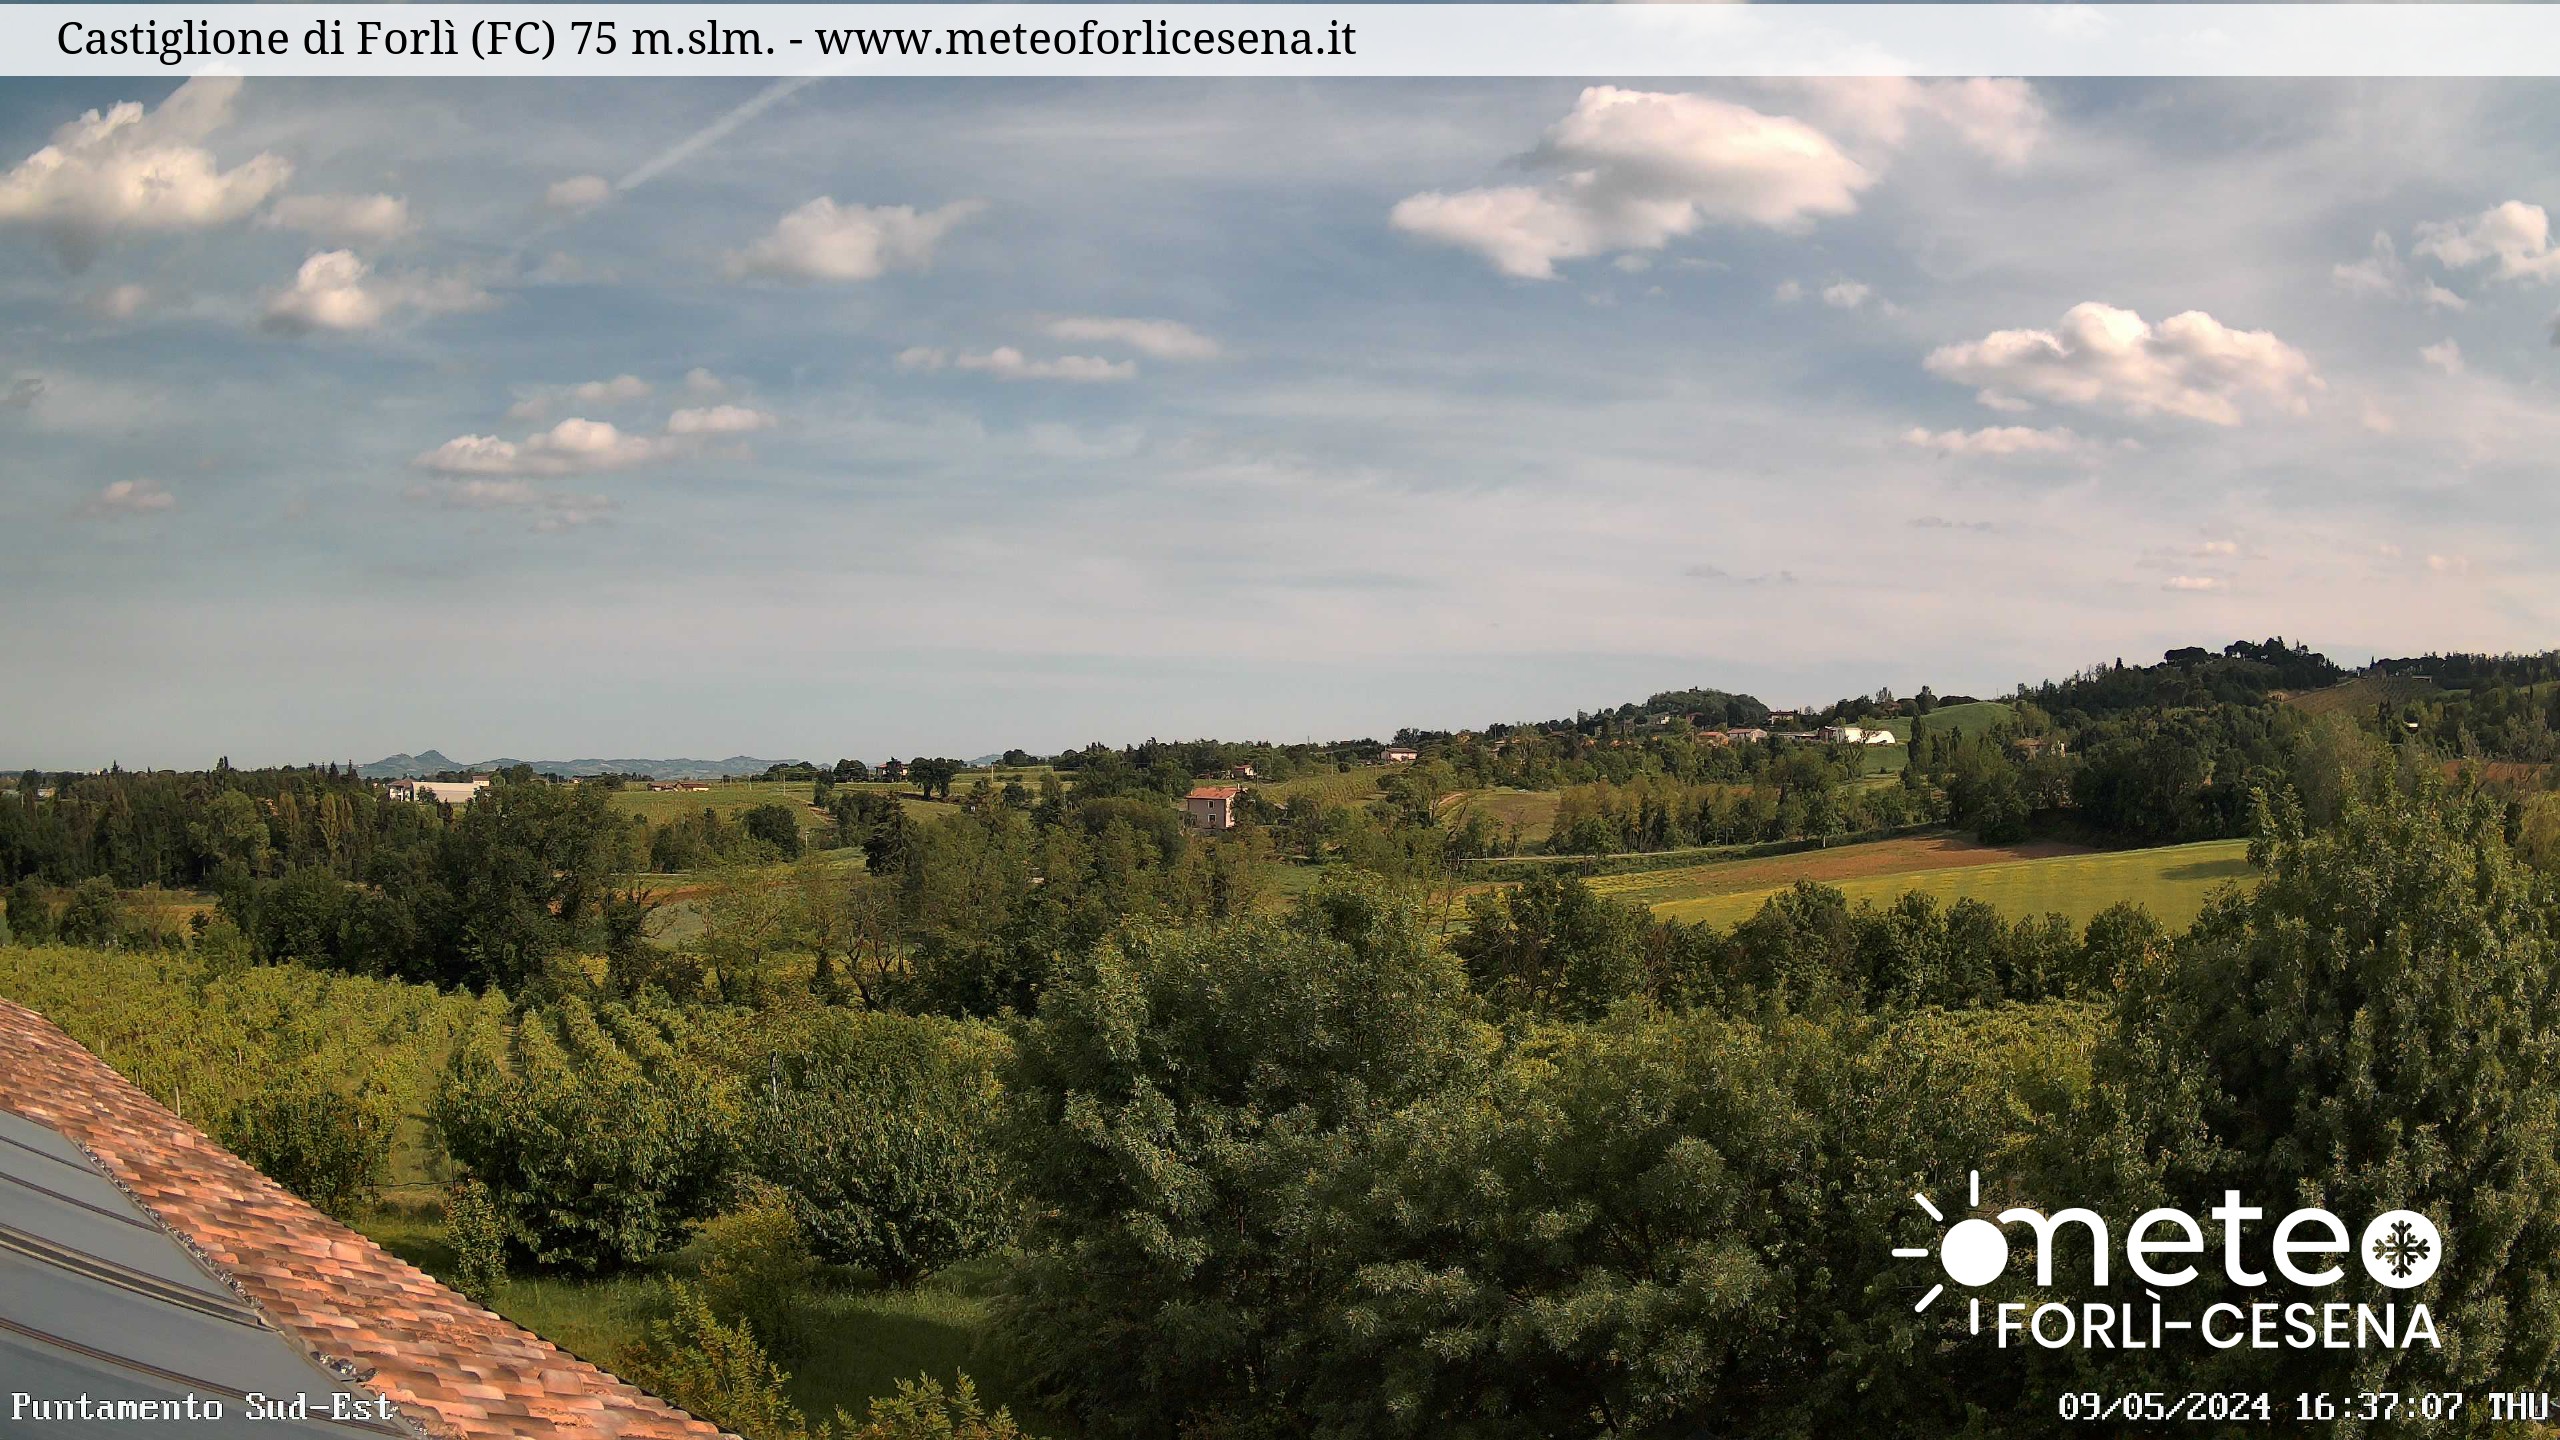 Webcam Emilia Romagna: Castiglione di Forlì